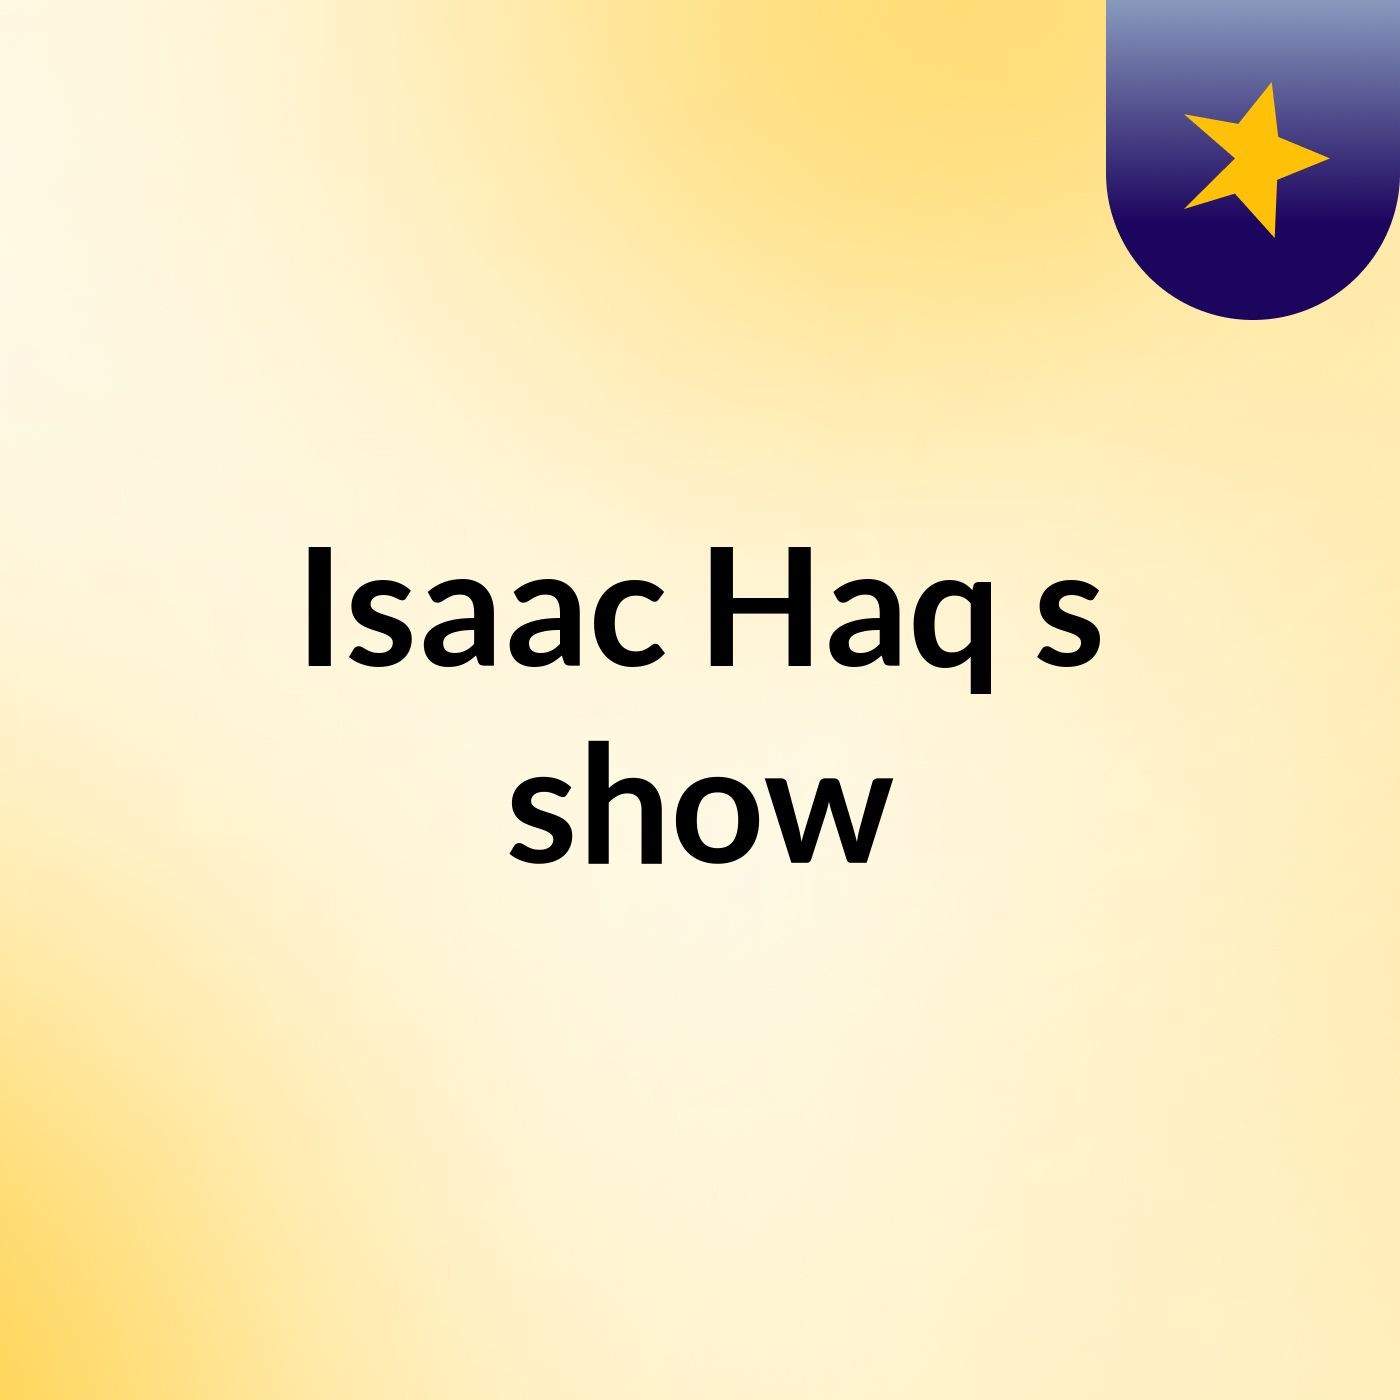 Isaac Haq's show